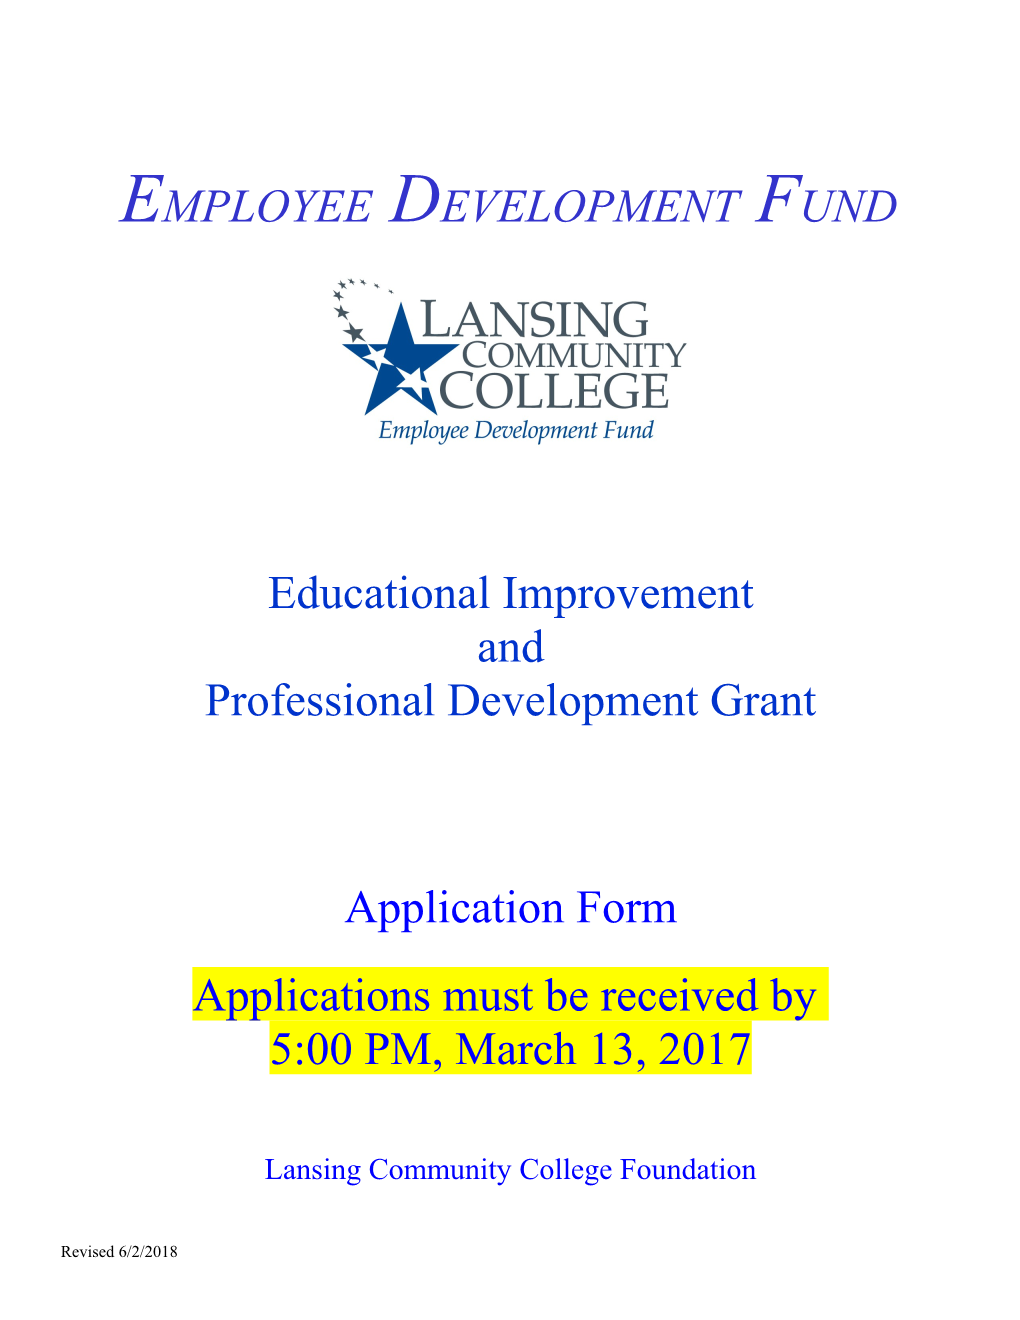 Employee Development Fund